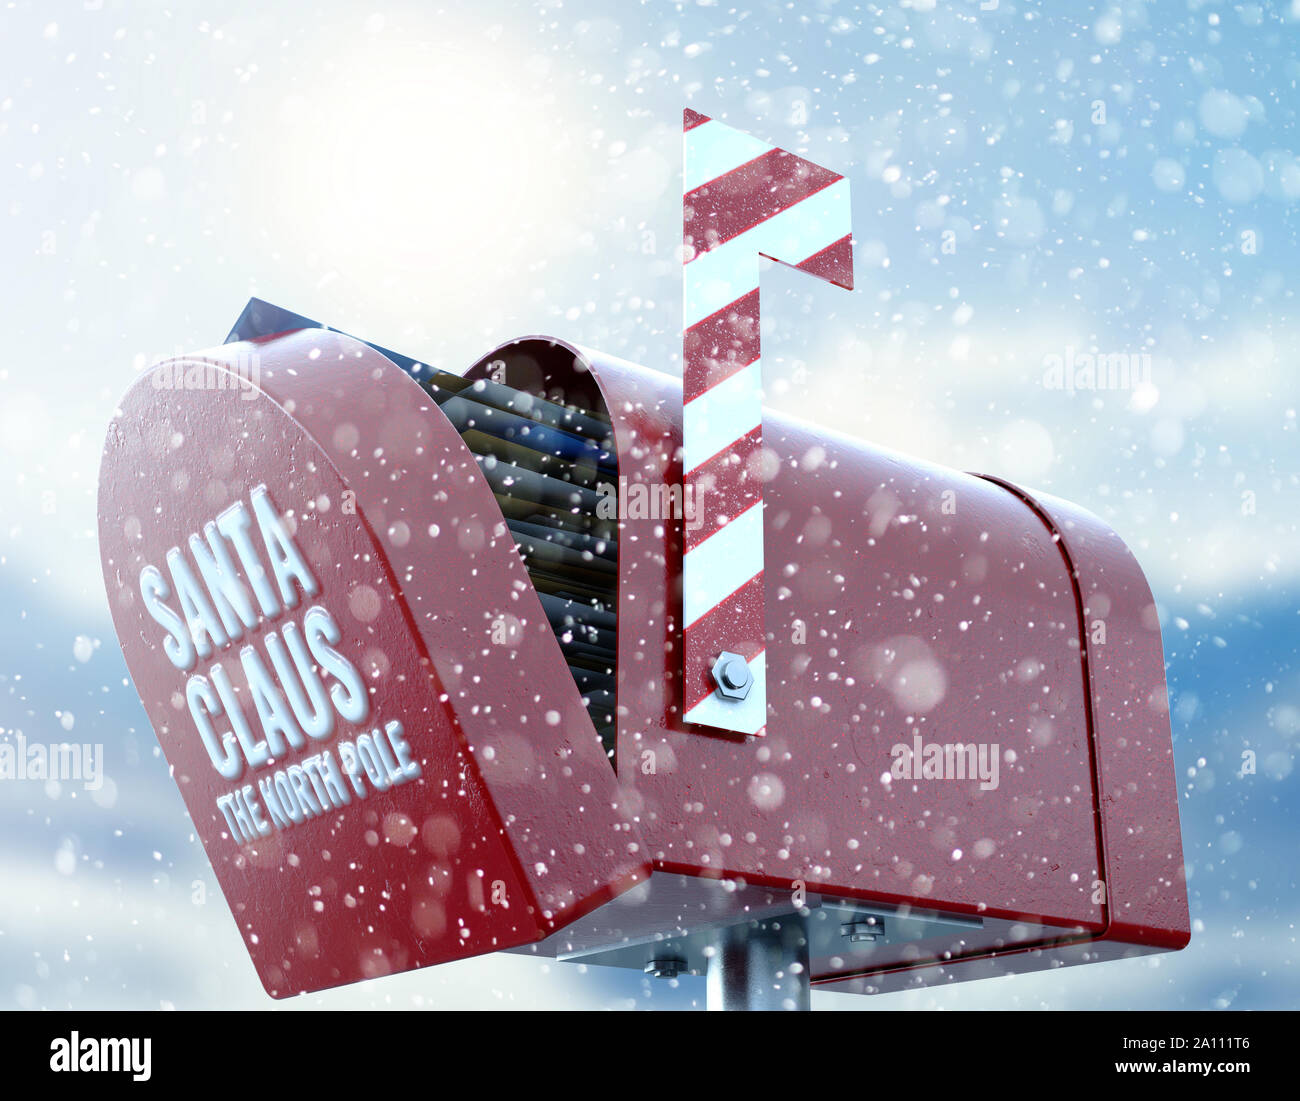 Un concept de Noël représentant une boîte aux lettres rouges appartenant à santa clause regorge de cadeaux pour enfants lettres à lui sur un background froid neigeux Banque D'Images